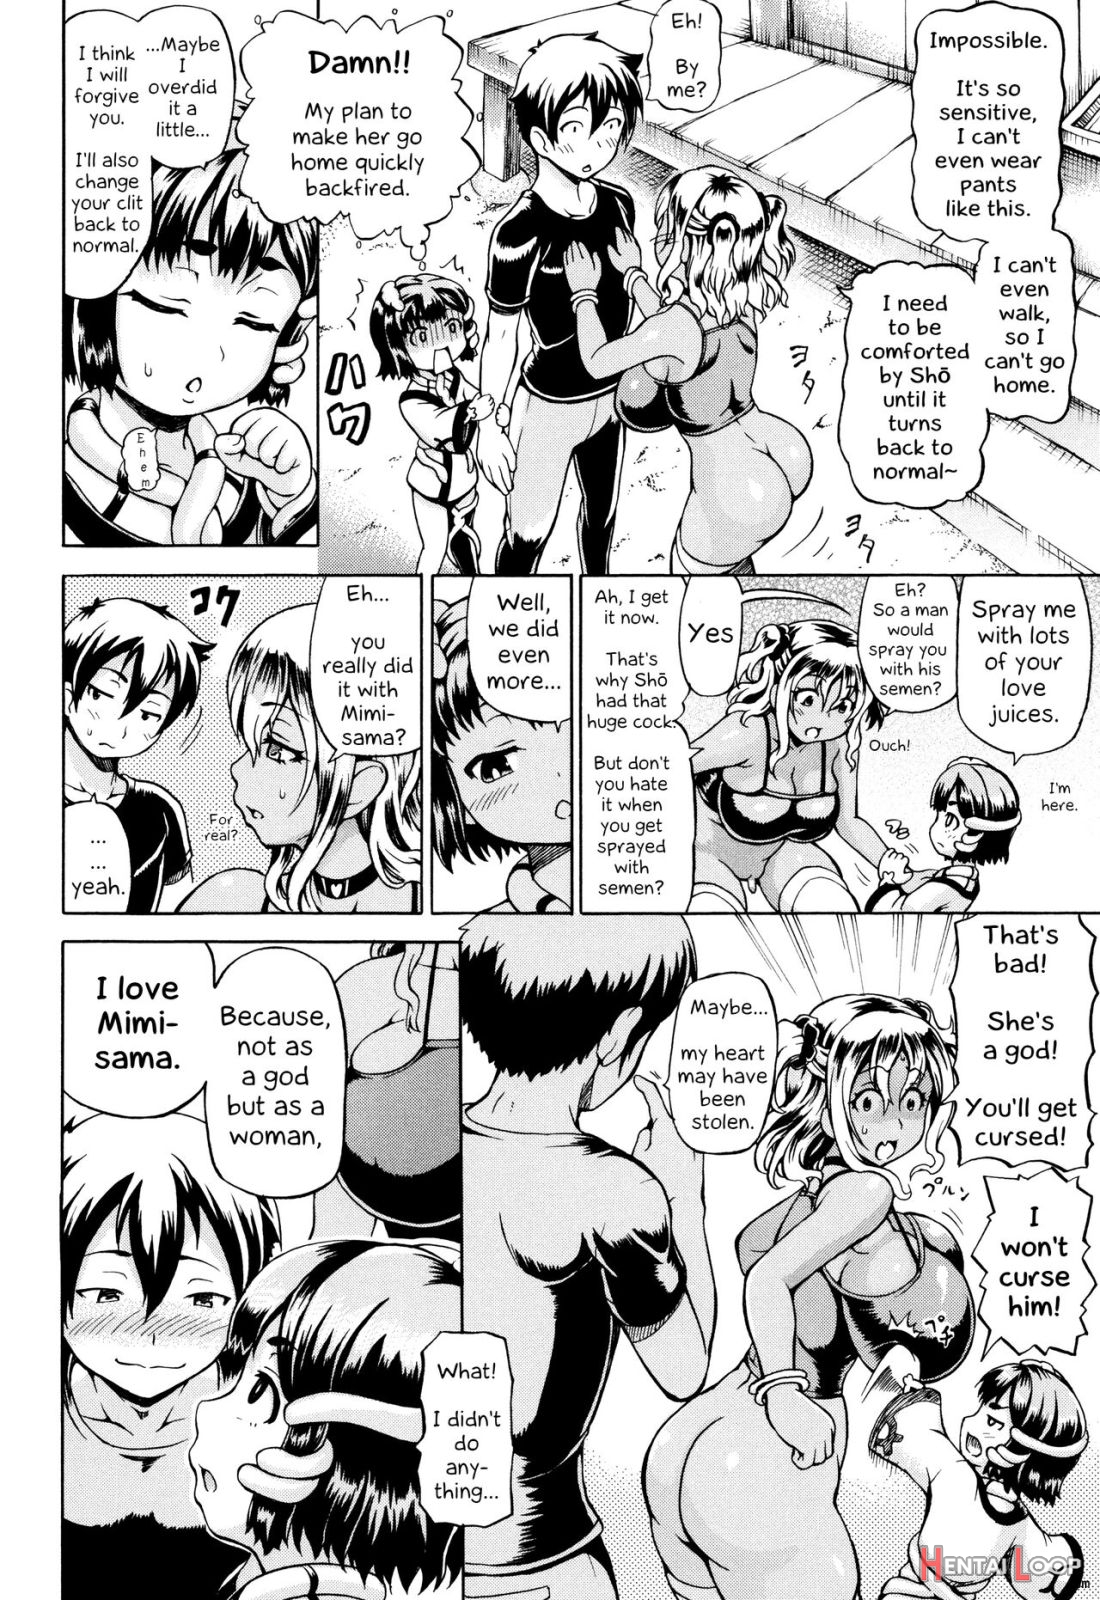 Mimi-sama Okkiku Shite! page 54